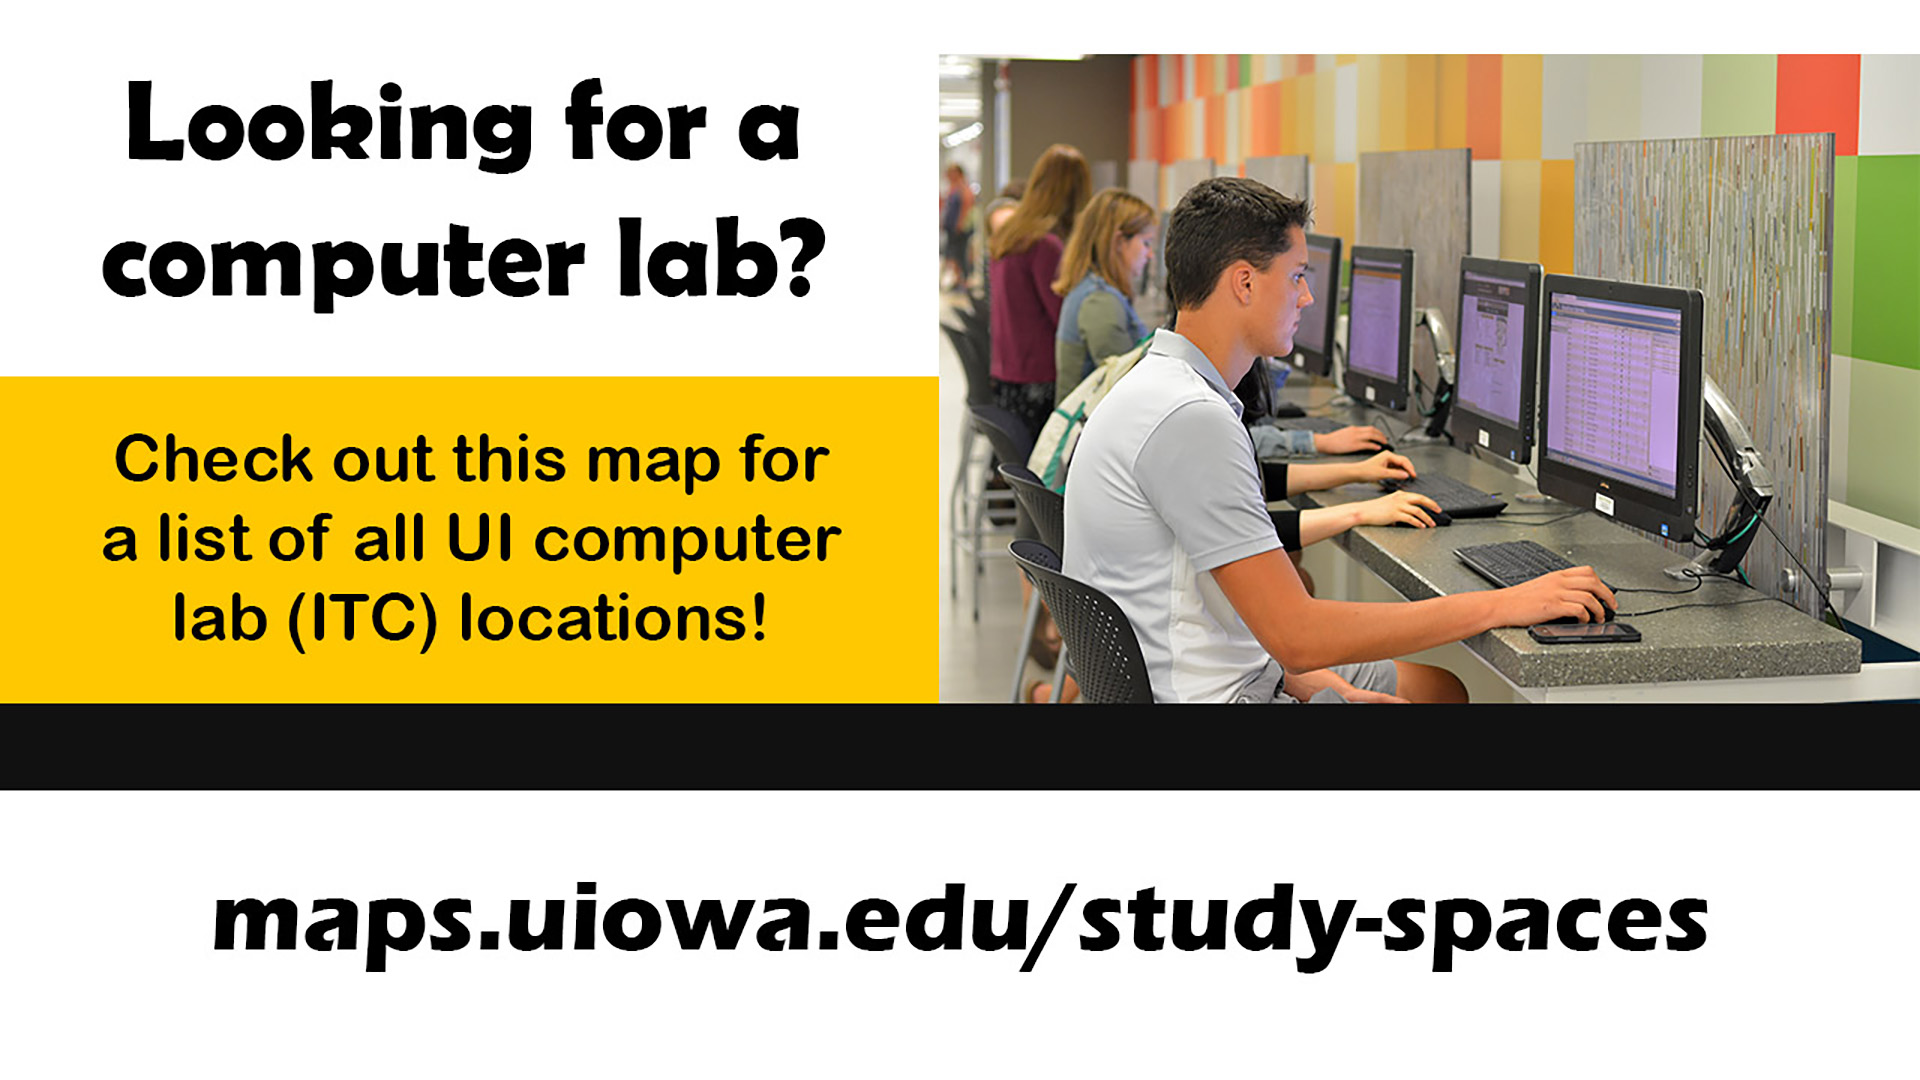 IMU ITC Locations maps.uiowa.edu/study-spaces